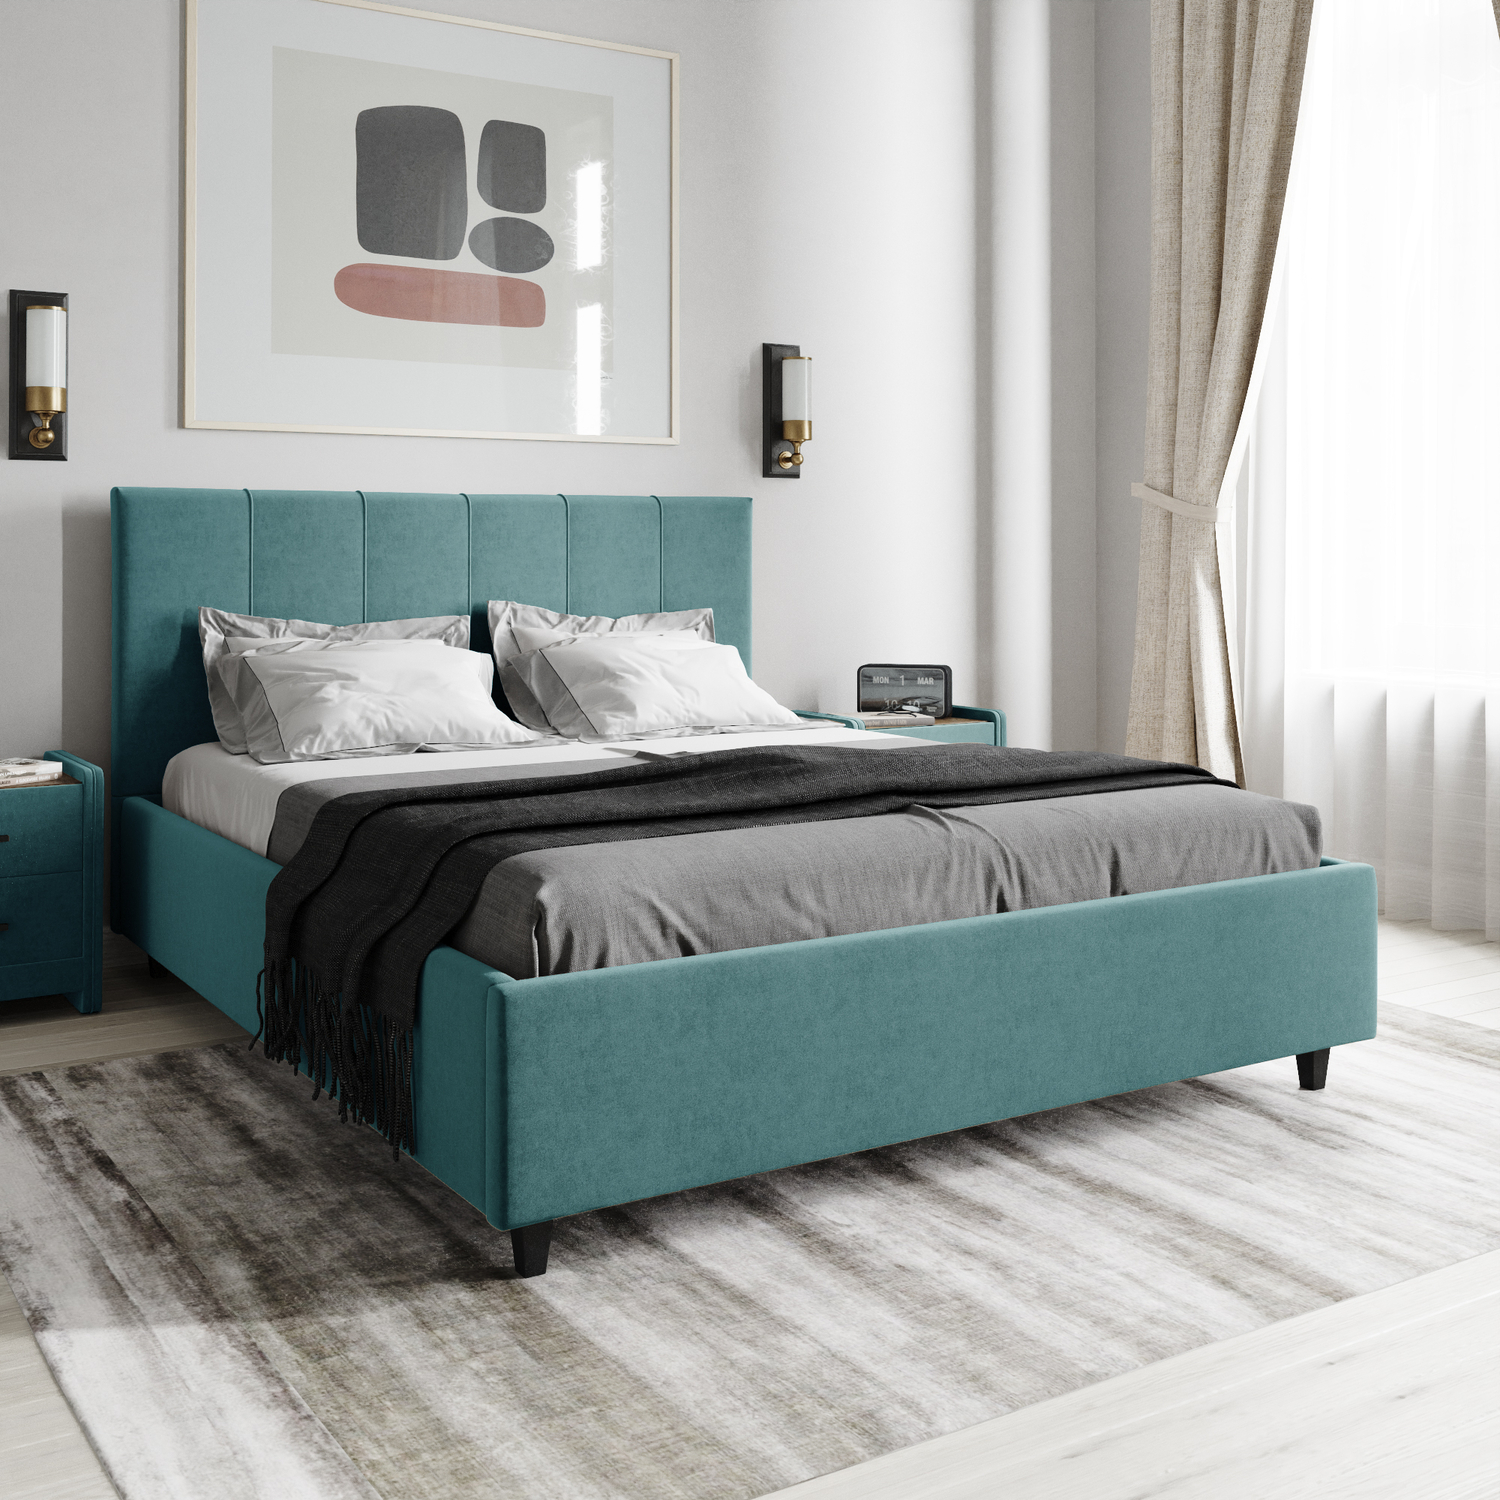 Лазурит мебель кровати с подъемным механизмом